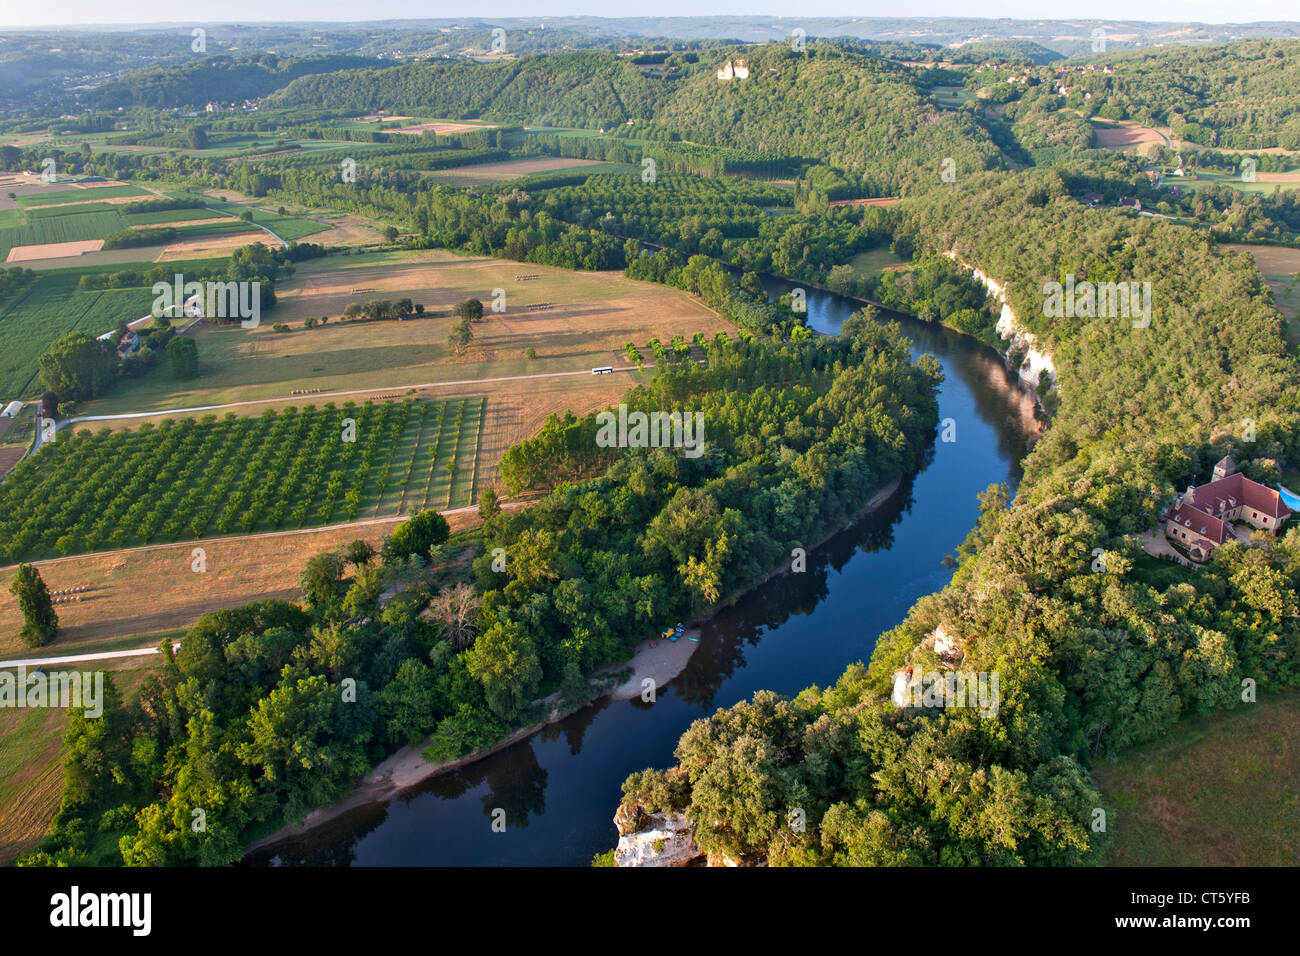 Vue aérienne de la rivière Dordogne et de la campagne environnante, près de Sarlat dans la région de Dordogne-Perigord le sud-ouest de la France. Banque D'Images